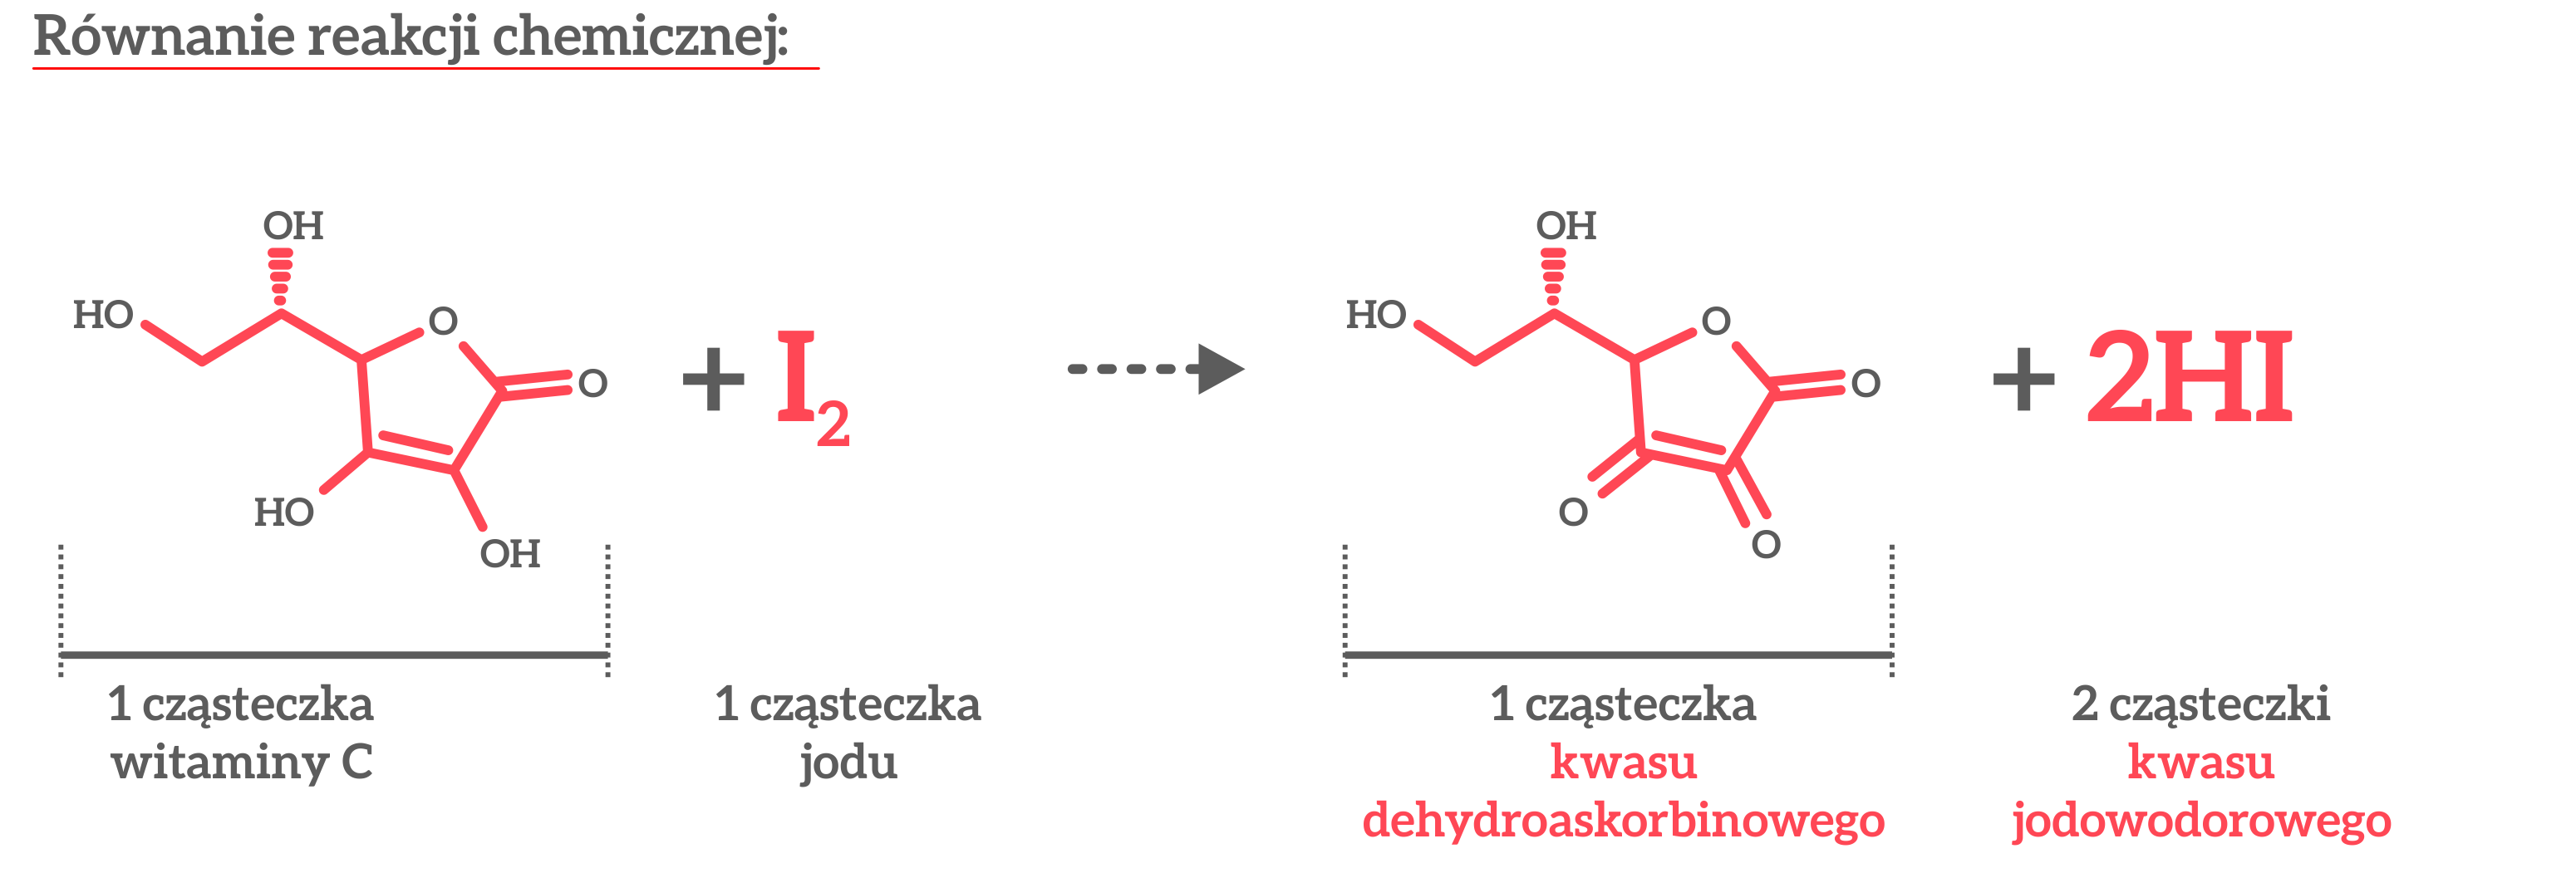 Ilustracja reakcji chemicznej witaminy C i jodu. W reakcji chemicznej bierze udział jedna cząsteczka witaminy C, która łącząc się z jedną cząsteczką jodu tworzy 1 cząsteczkę kwasu dehydroaskorbinowego i 2 cząsteczki kwasu jodowodorowego.